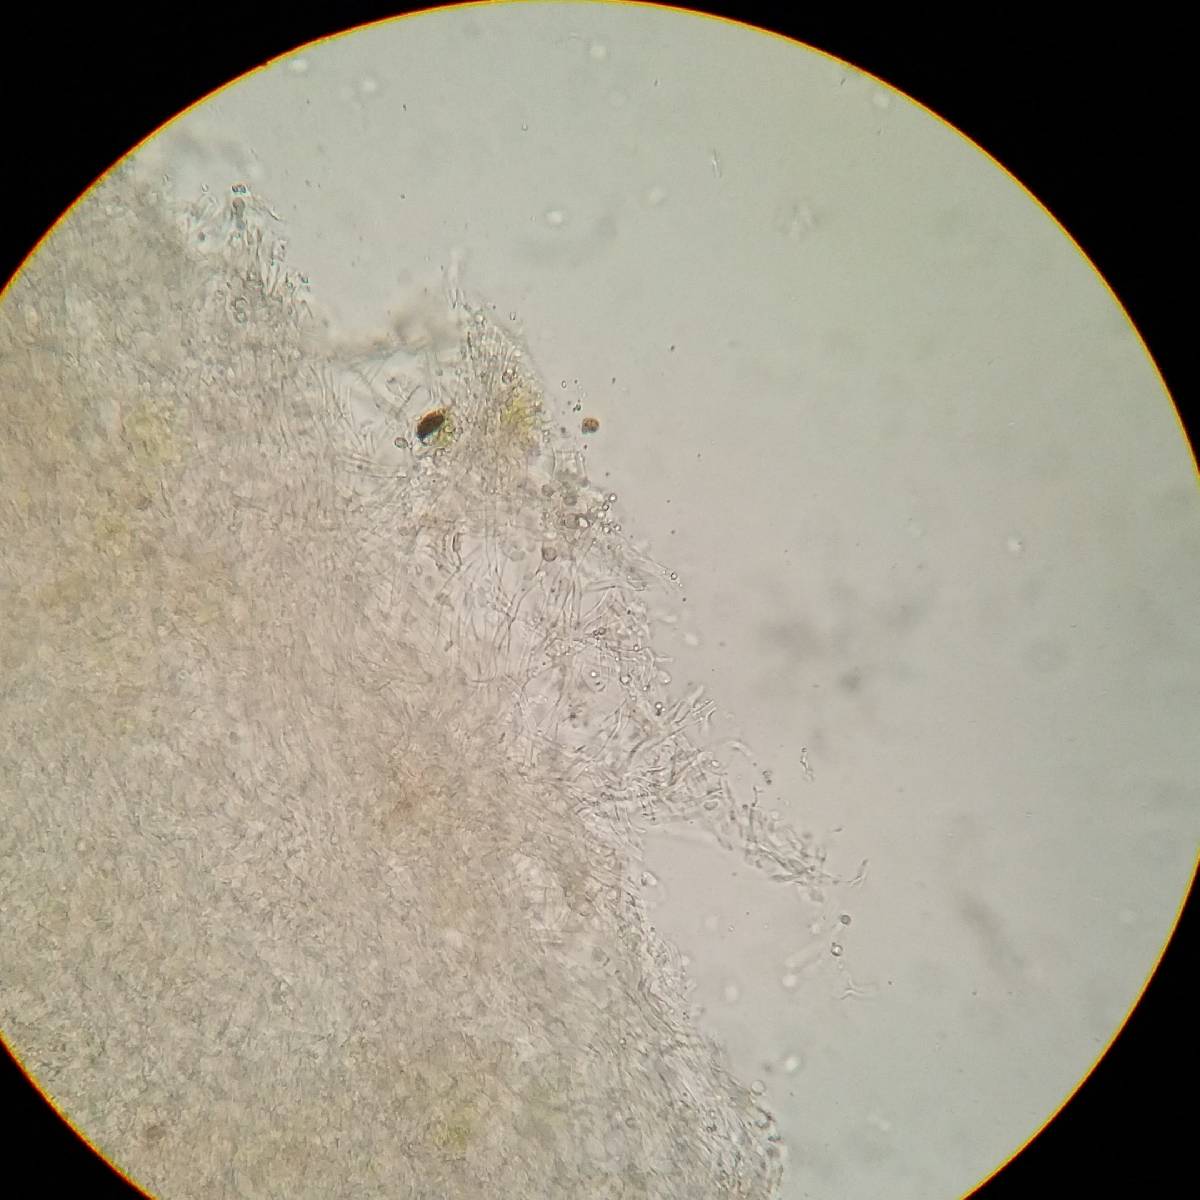 Cyphellostereum pusiolum image